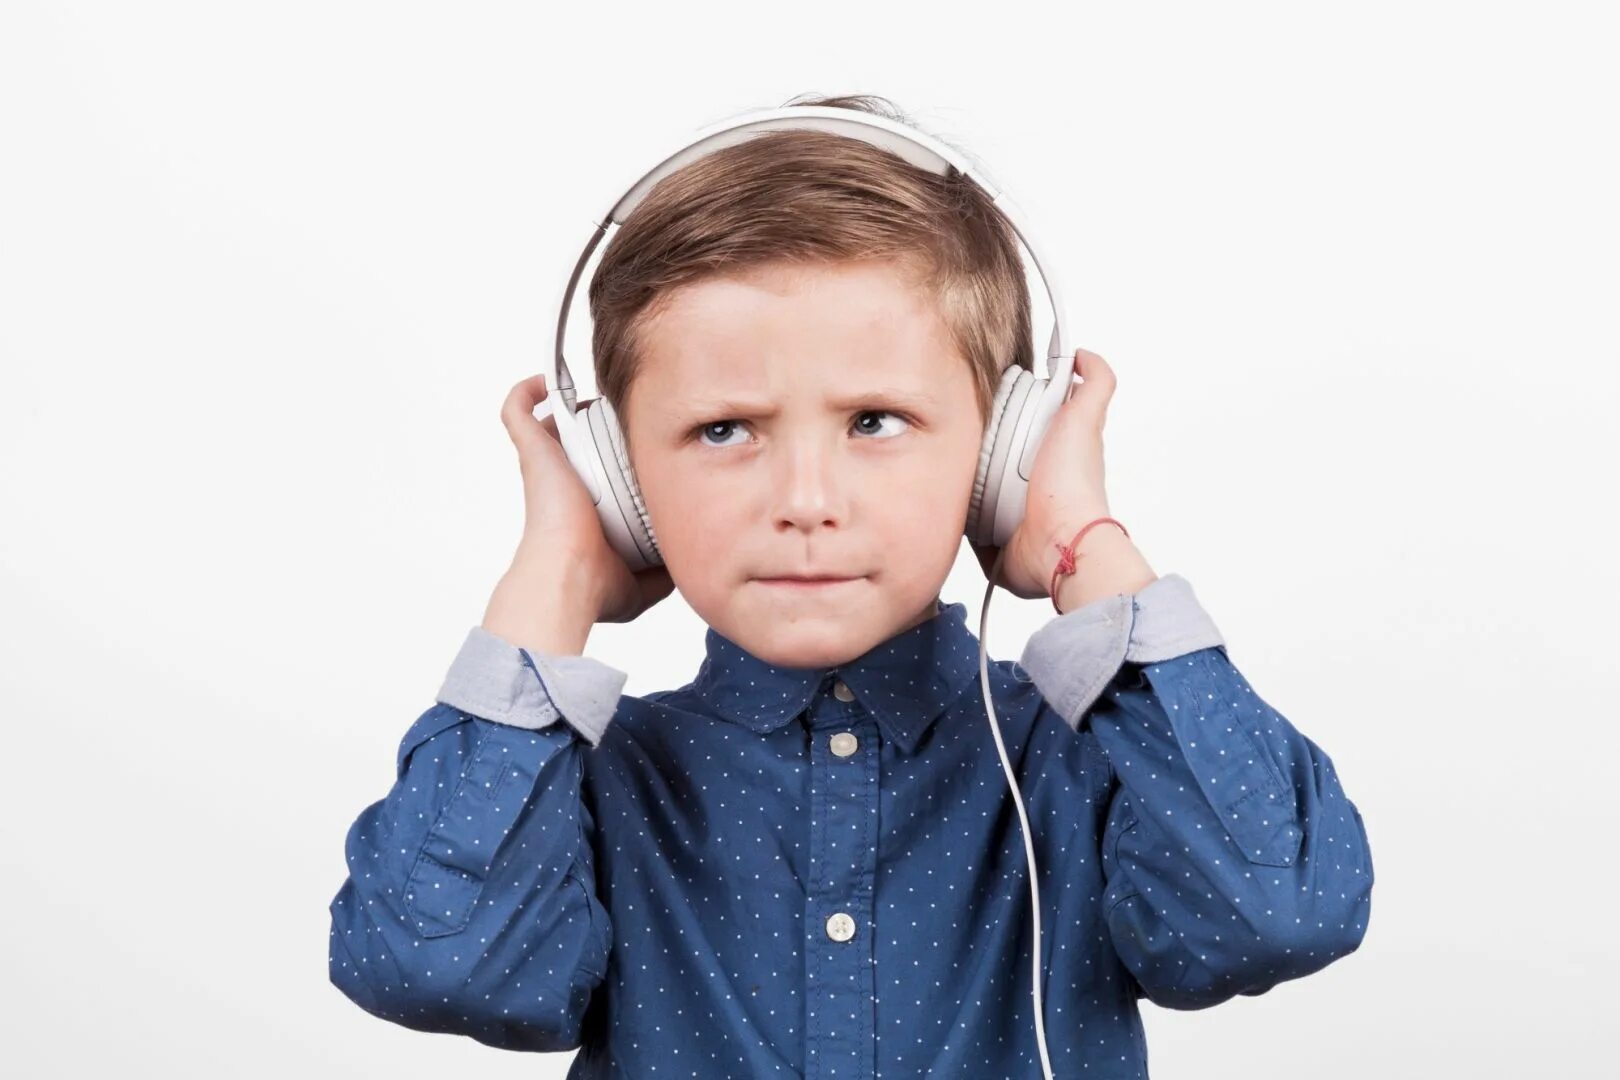 Картинка слышать для детей. Слушающий мальчик. Картинка мальчик слушает музыку. Мальбчикслушает музыку. Мальчик слушает музыку в наушниках.